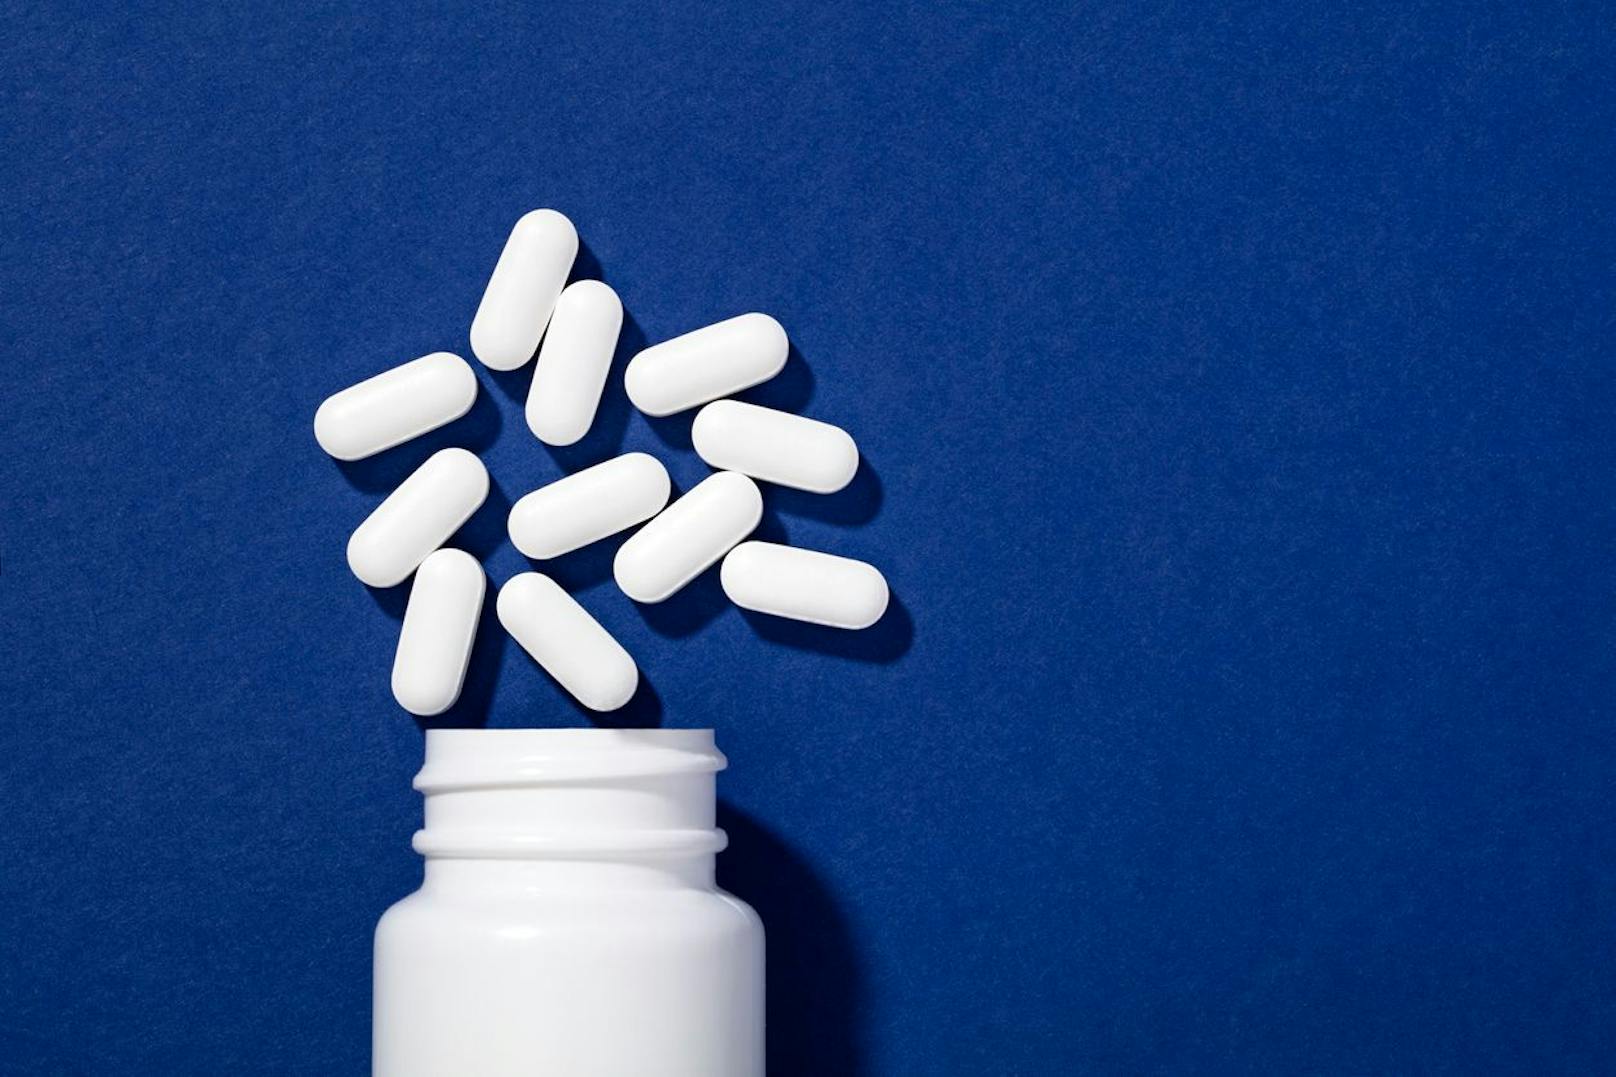 Probiotika könnten in Zukunft eine Alternative zu Antidepressiva sein.